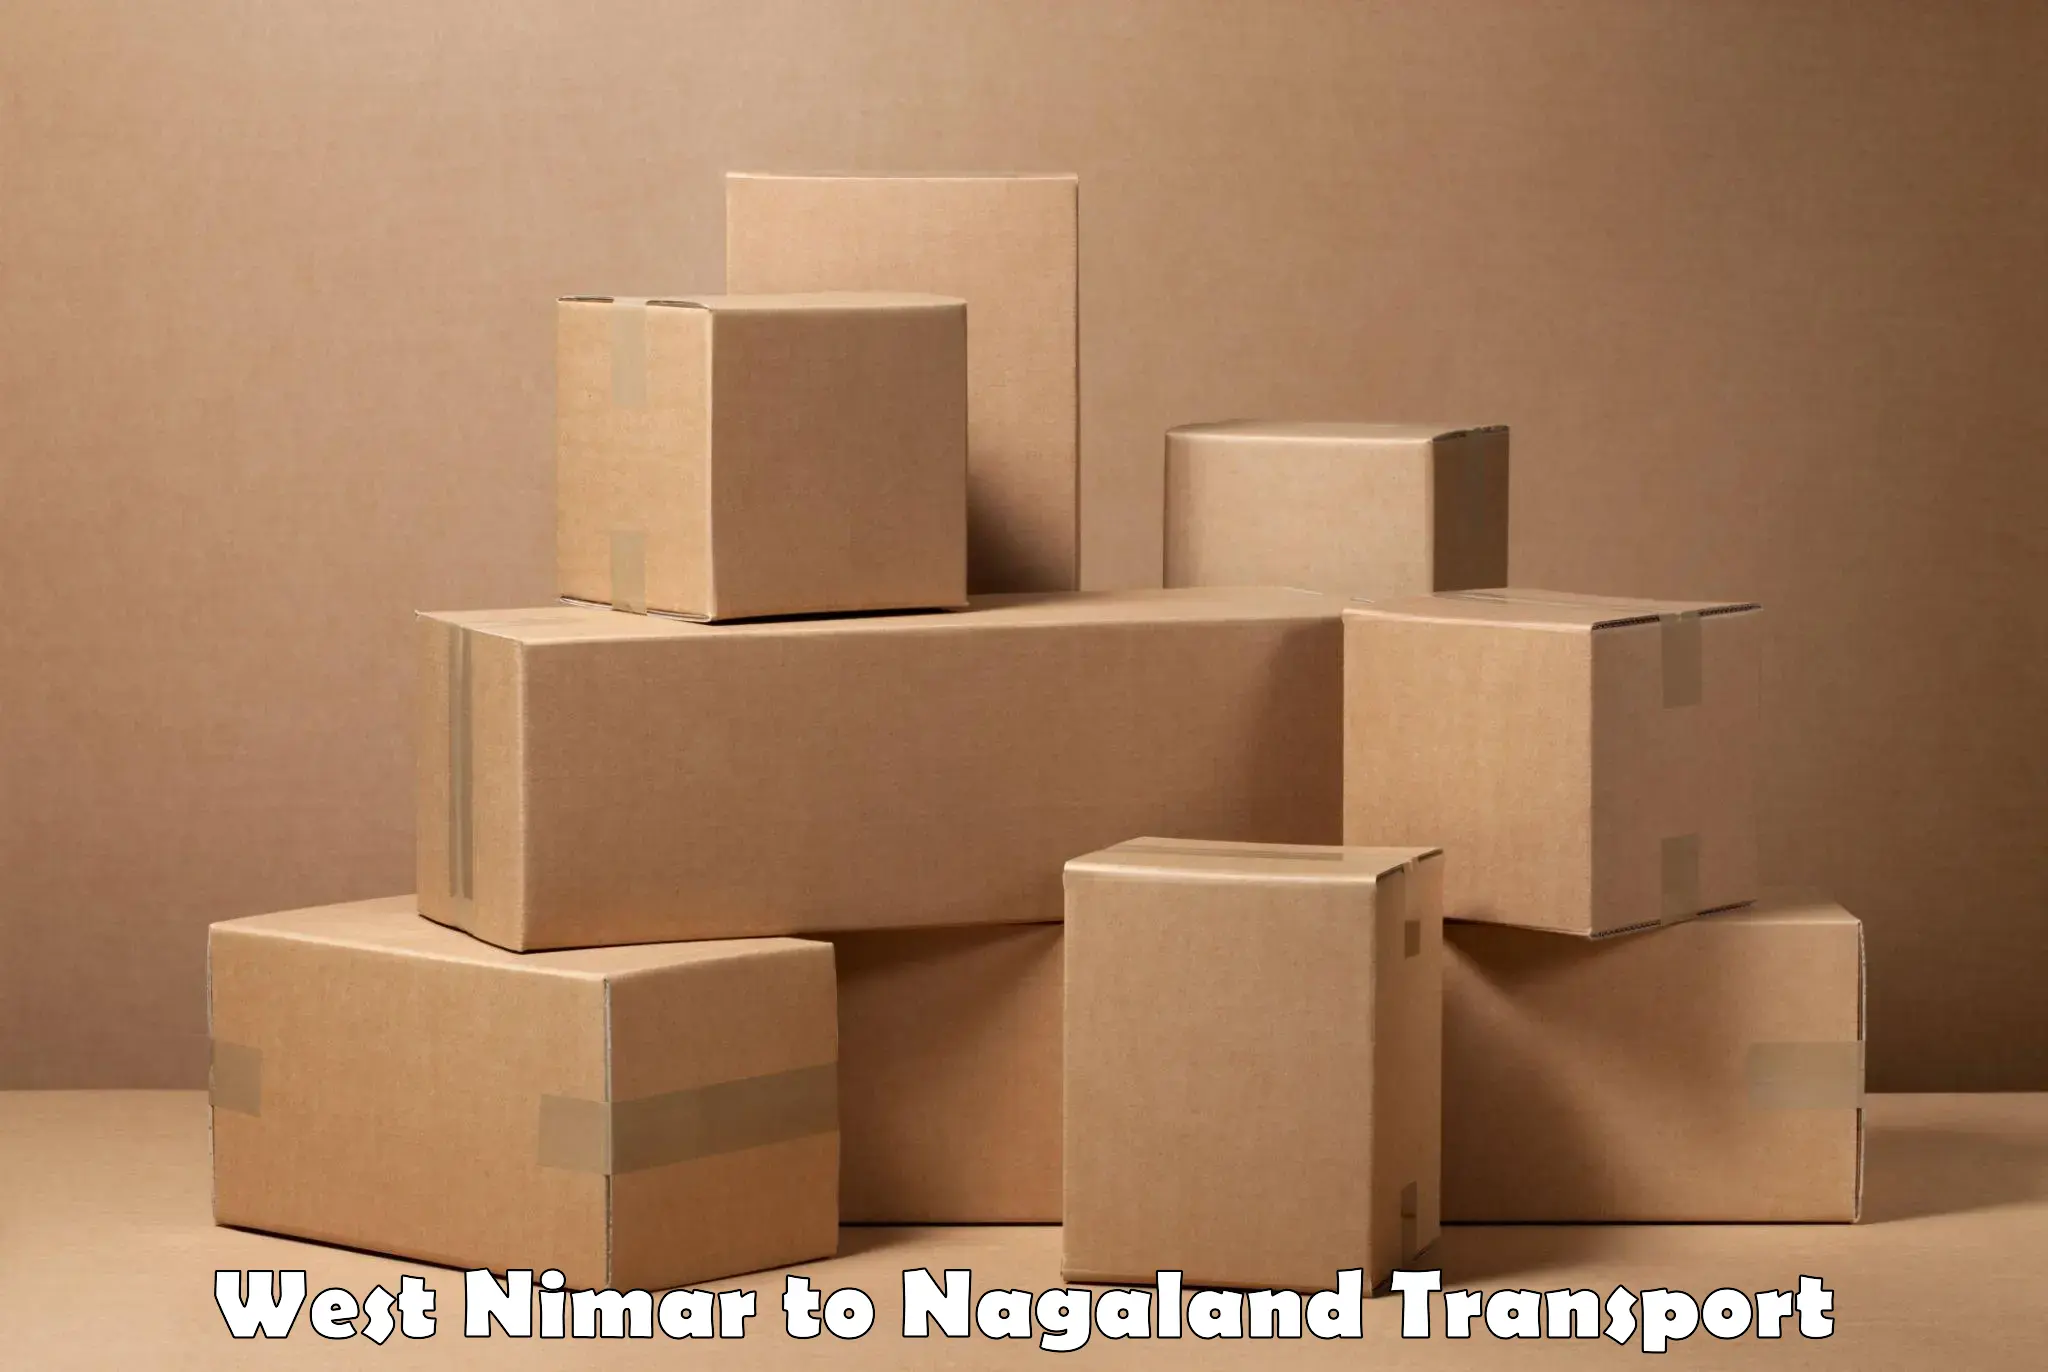 Furniture transport service West Nimar to Nagaland